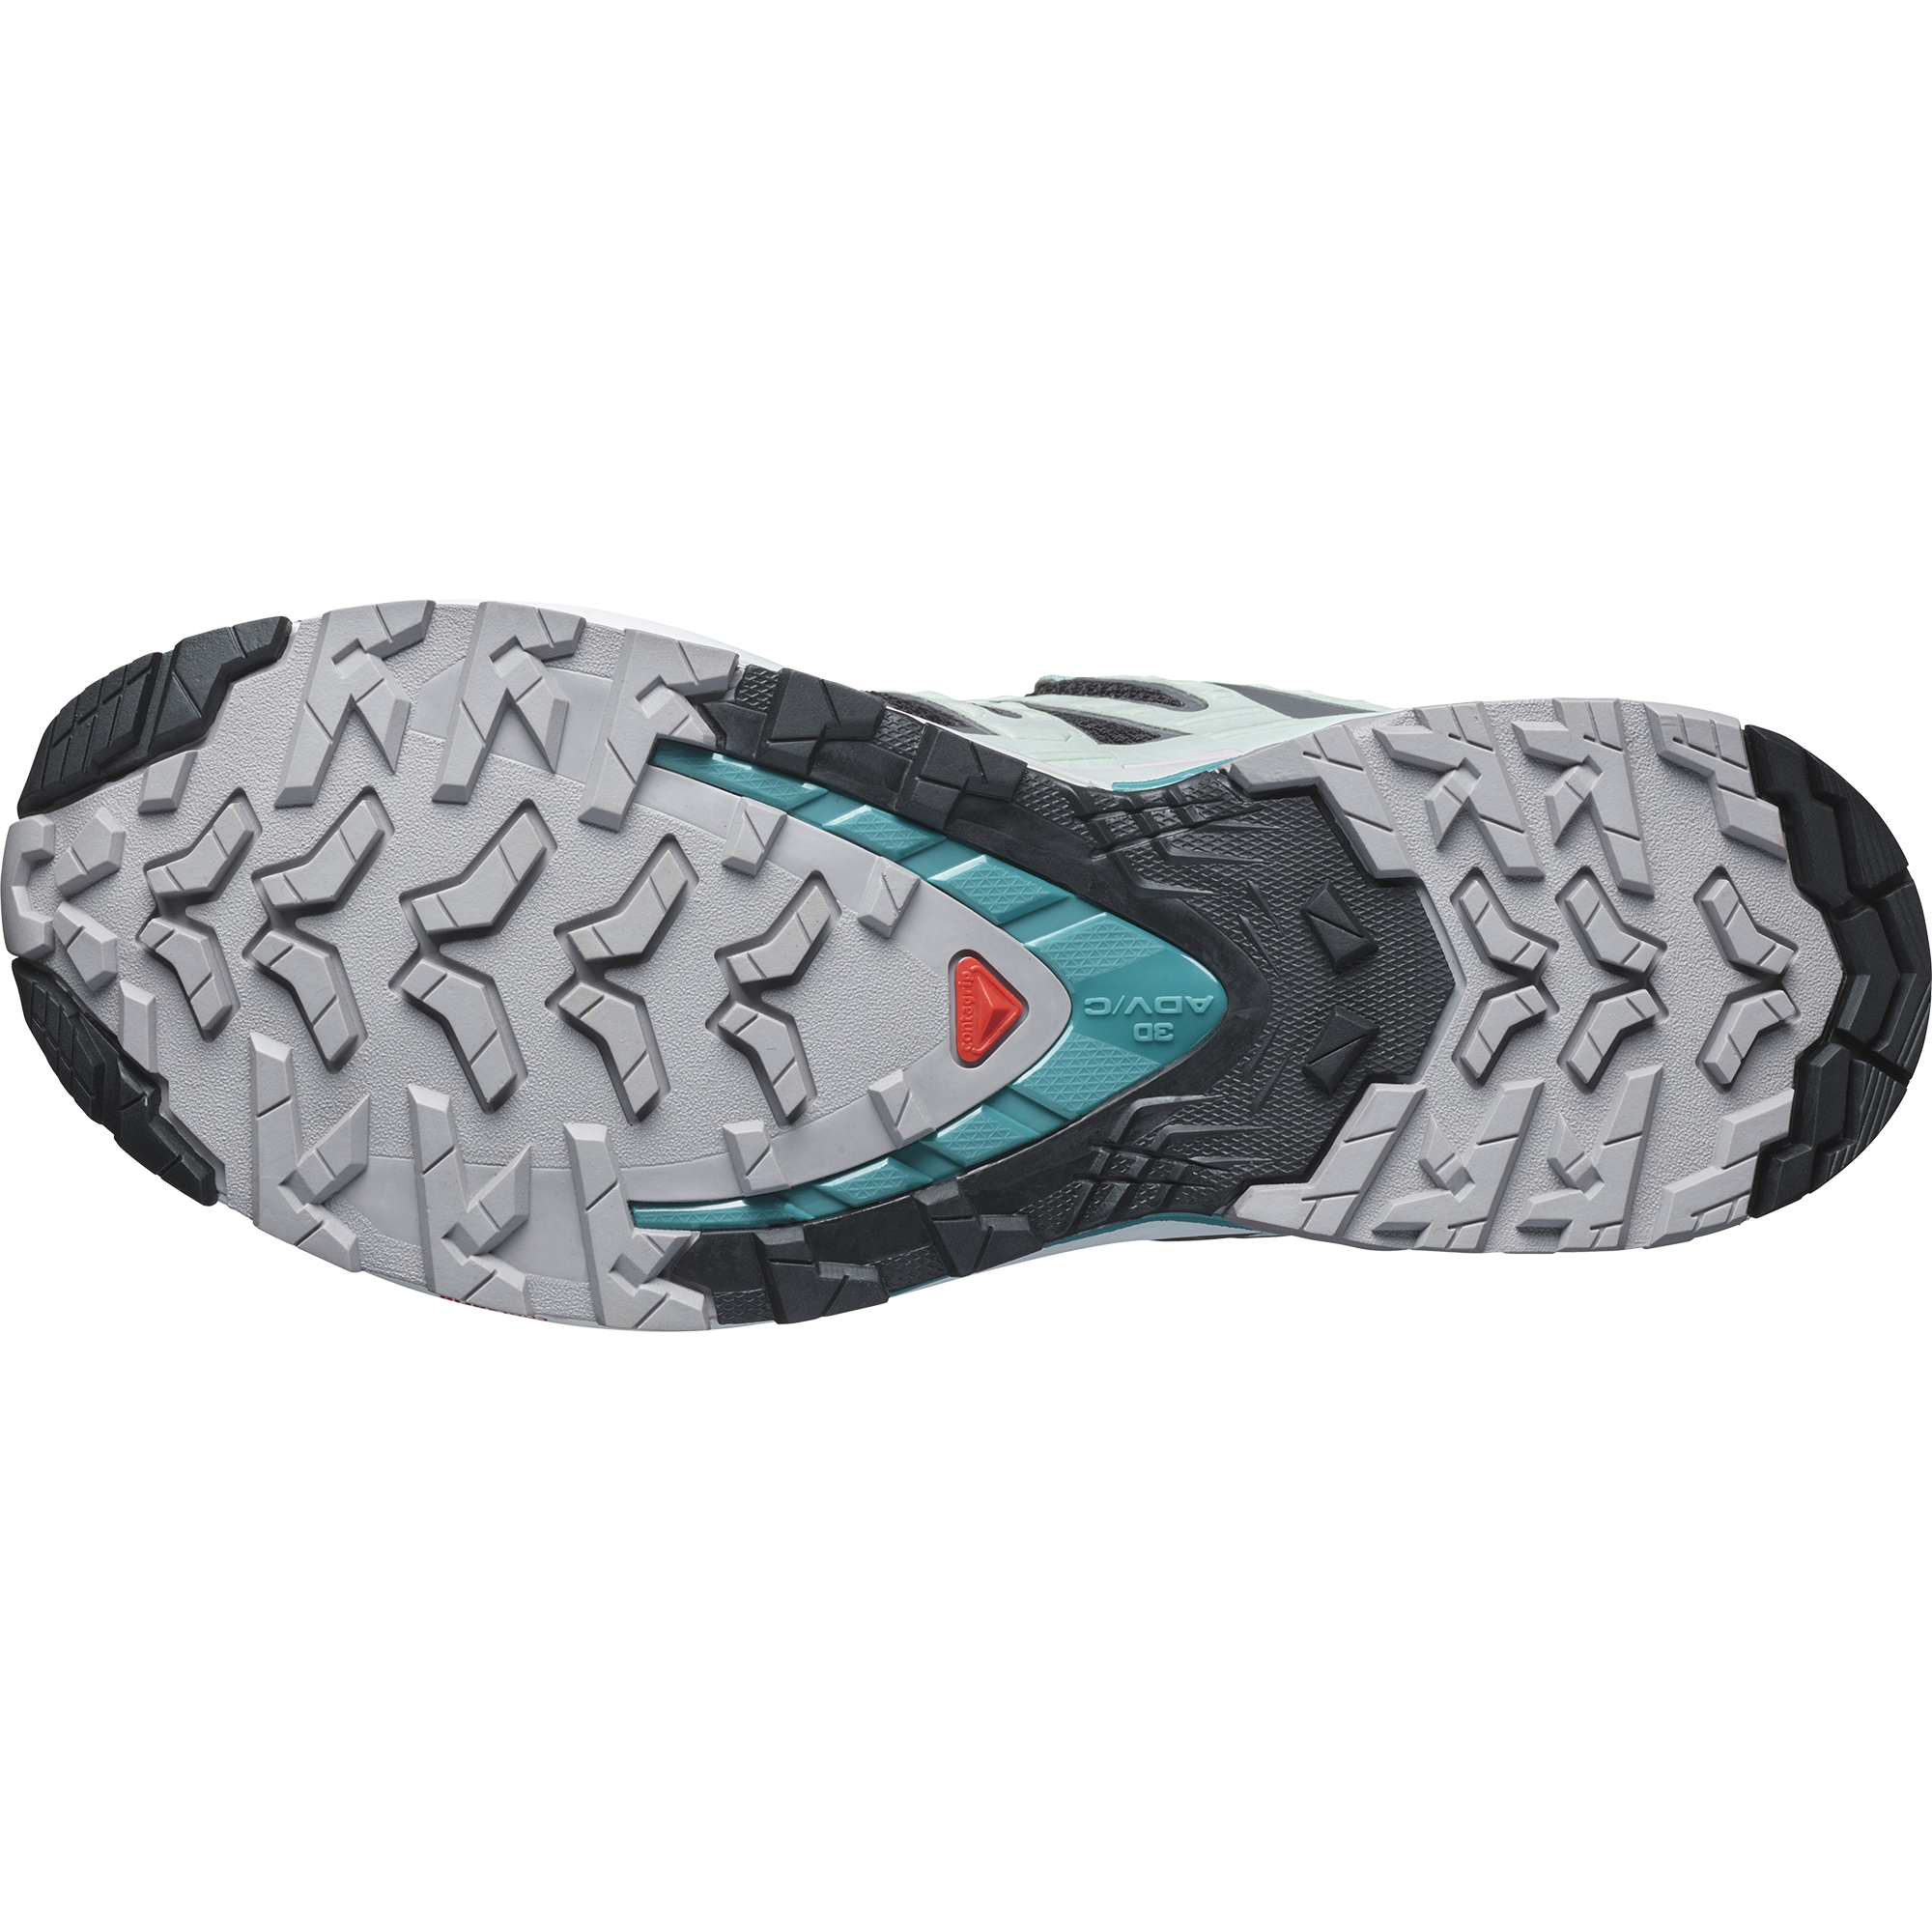 SALOMON（サロモン） XA PRO 3D V9 GORE-TEX 女性用トレイルランニングシューズ レディース 靴 防水 安定性 耐久性 サポート力